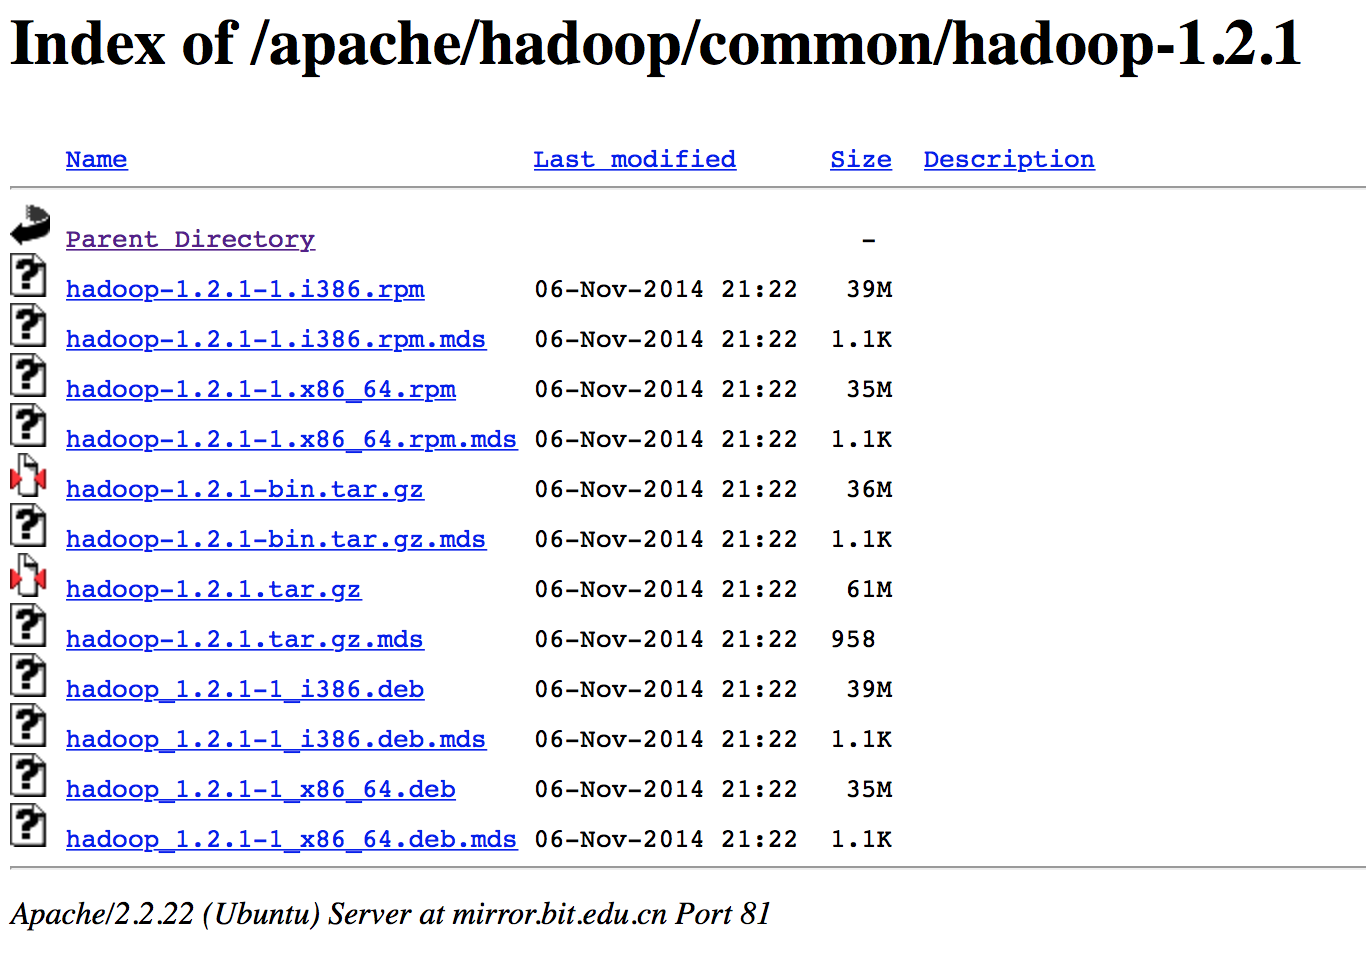 Hadoop 1.2.1